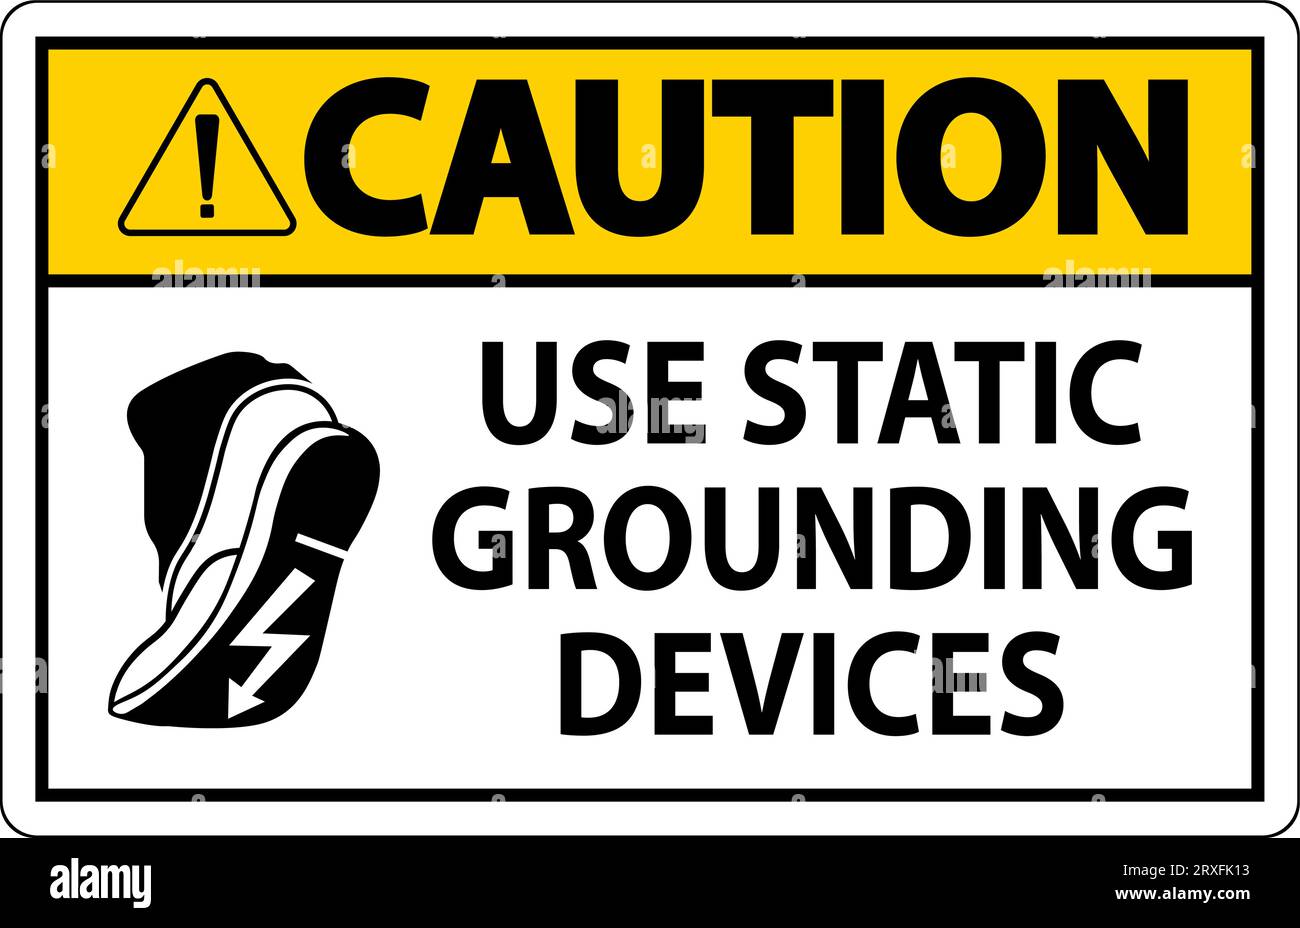 Panneau d'avertissement utiliser des dispositifs de mise à la terre statiques Illustration de Vecteur